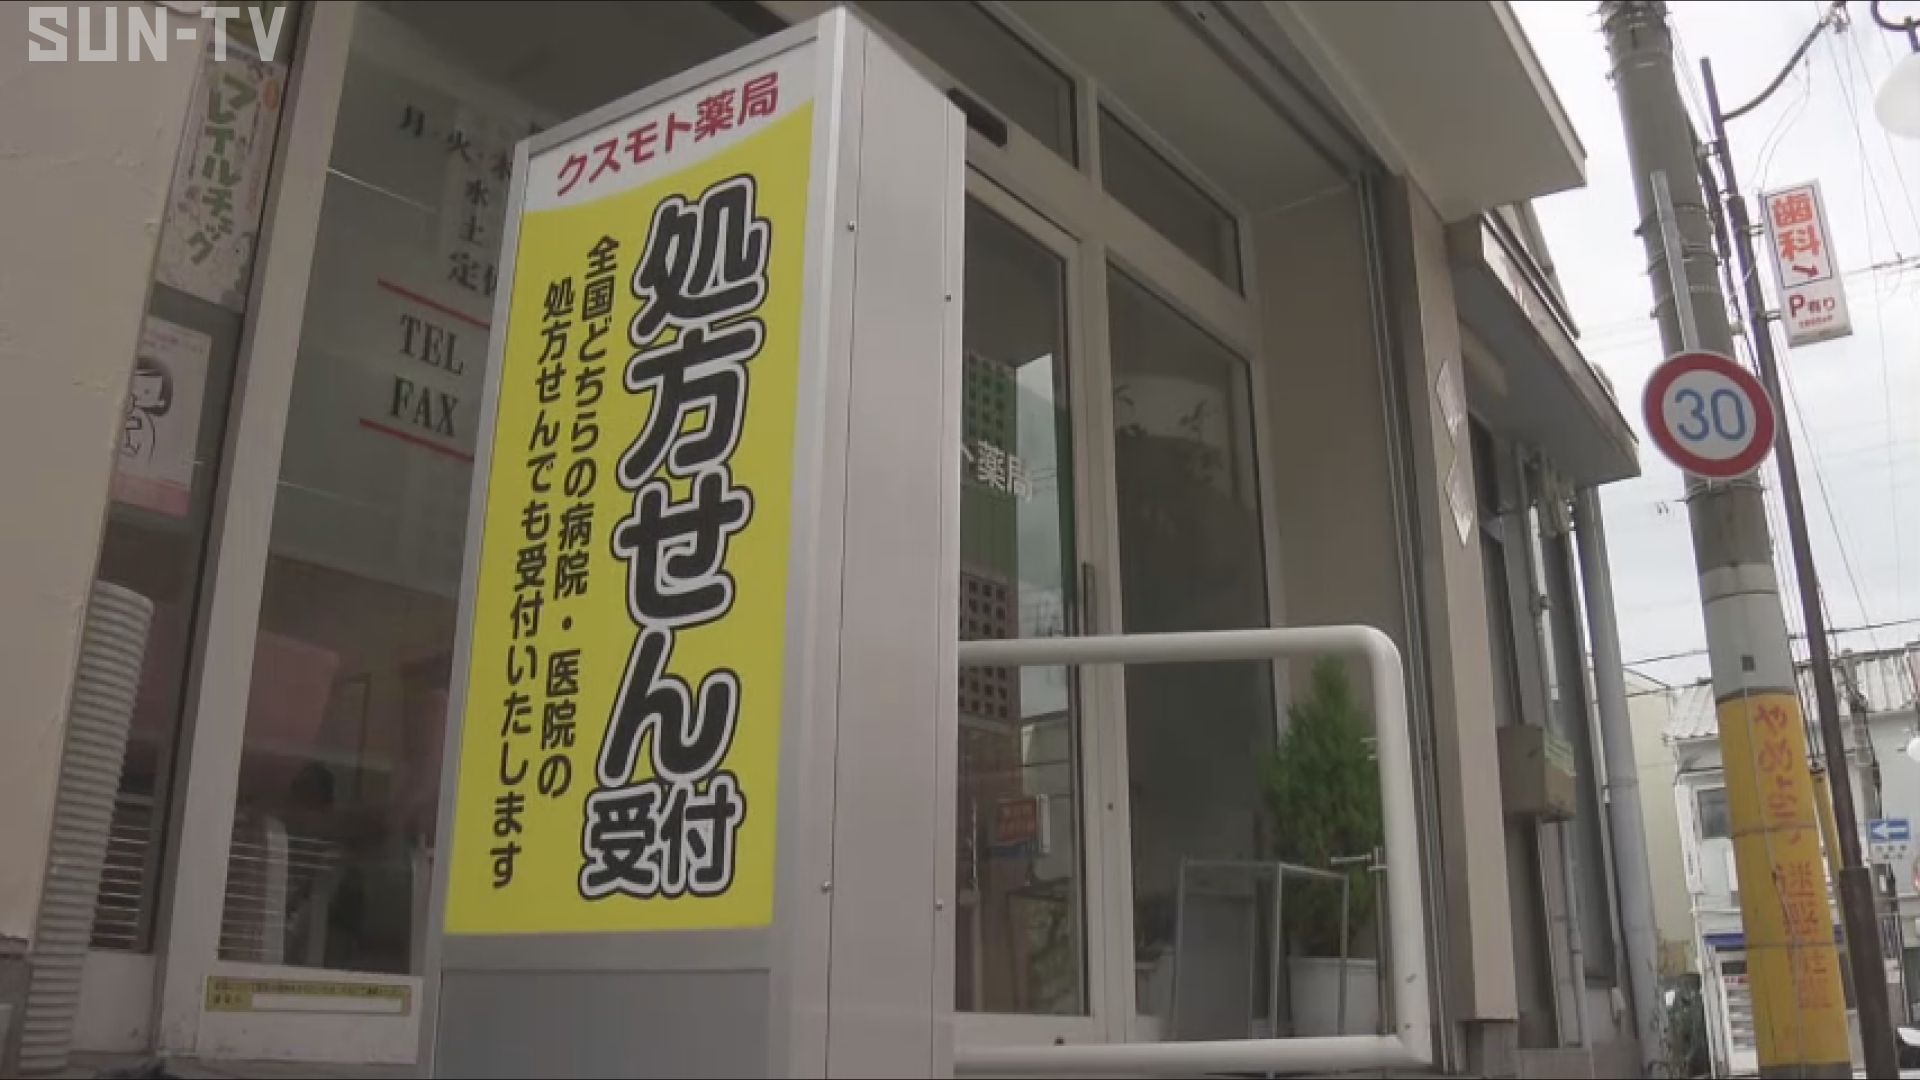 神戸市の薬局で強盗 男が逃走 刃物所持「お金を出せ」と脅す - サンテレビニュース